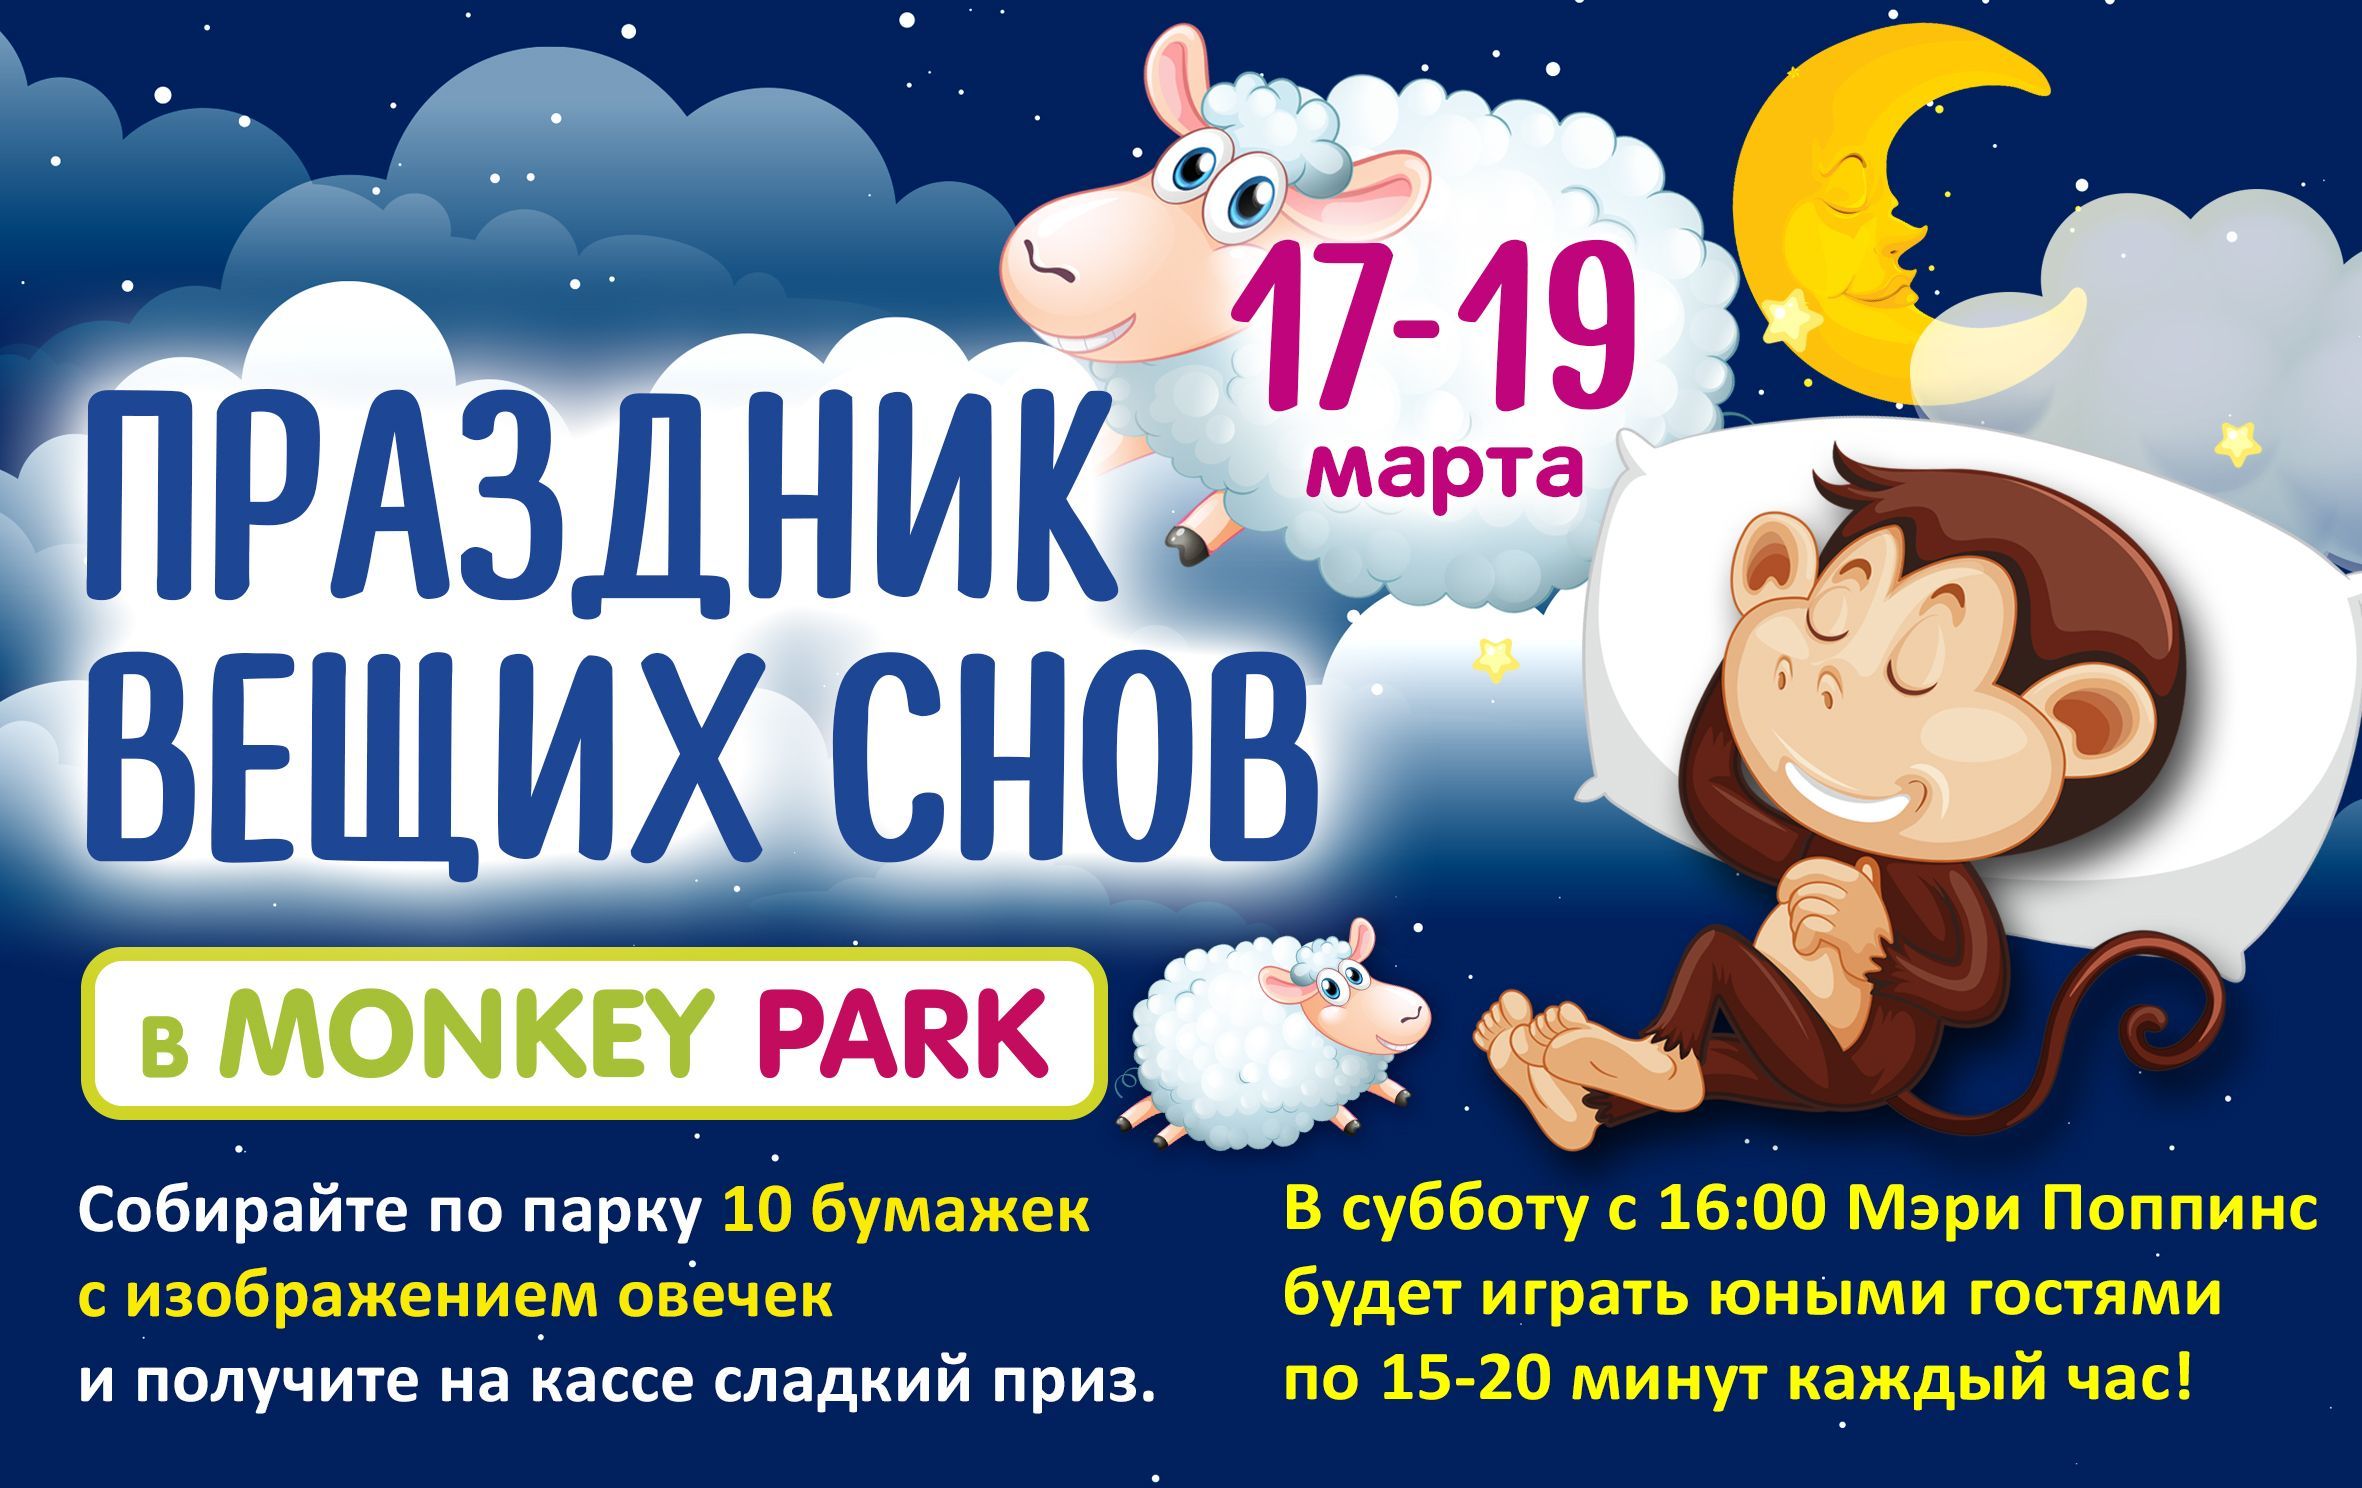 Праздник вещих снов 17-19 марта в Monkey Park